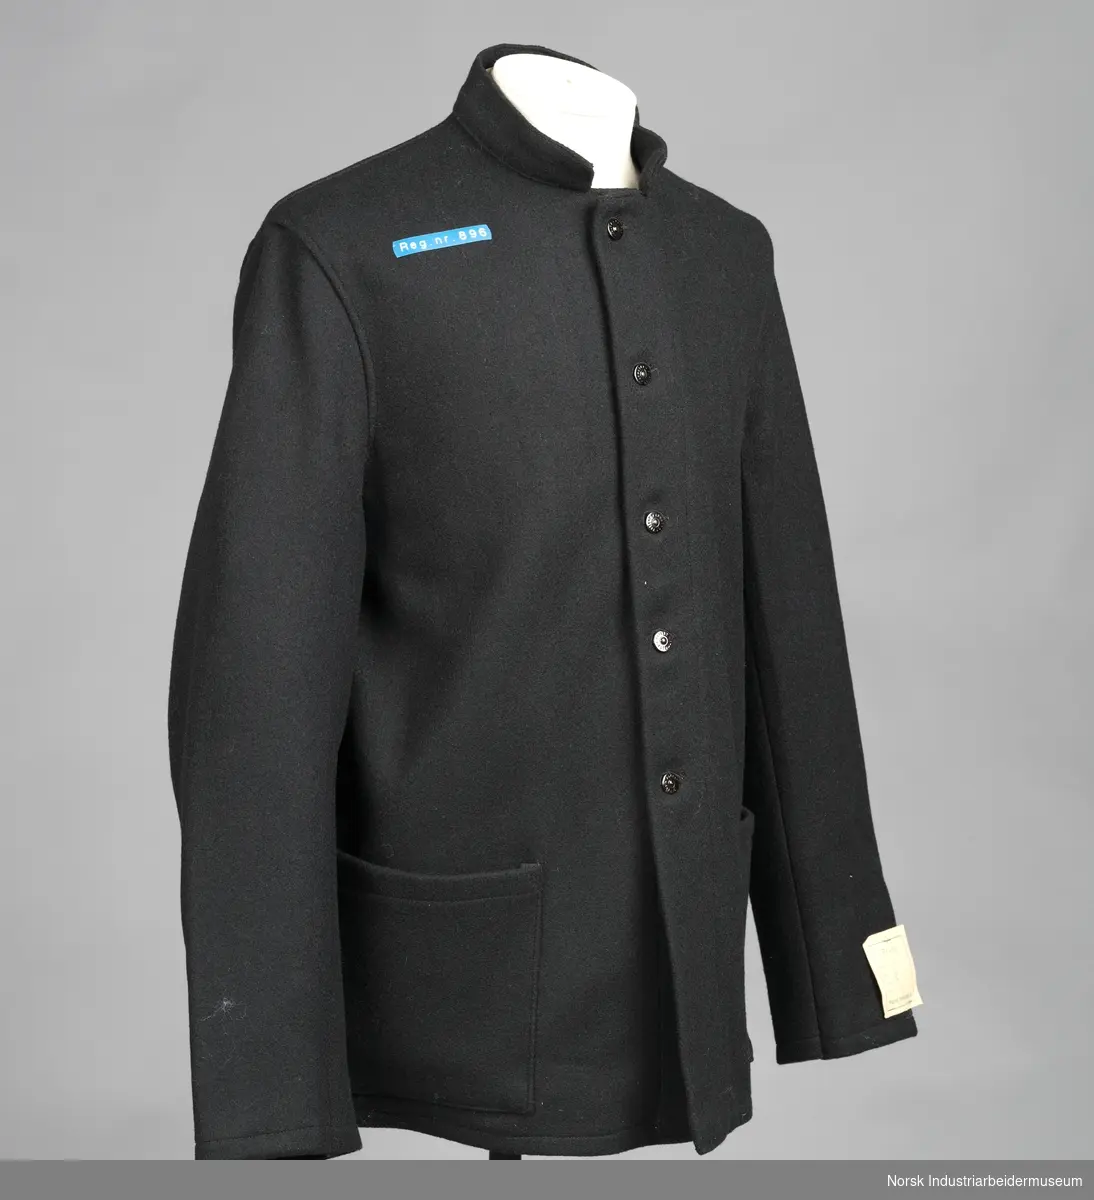 Sort arbeidsdress (jakke og bukse) med sorte blanke knapper.